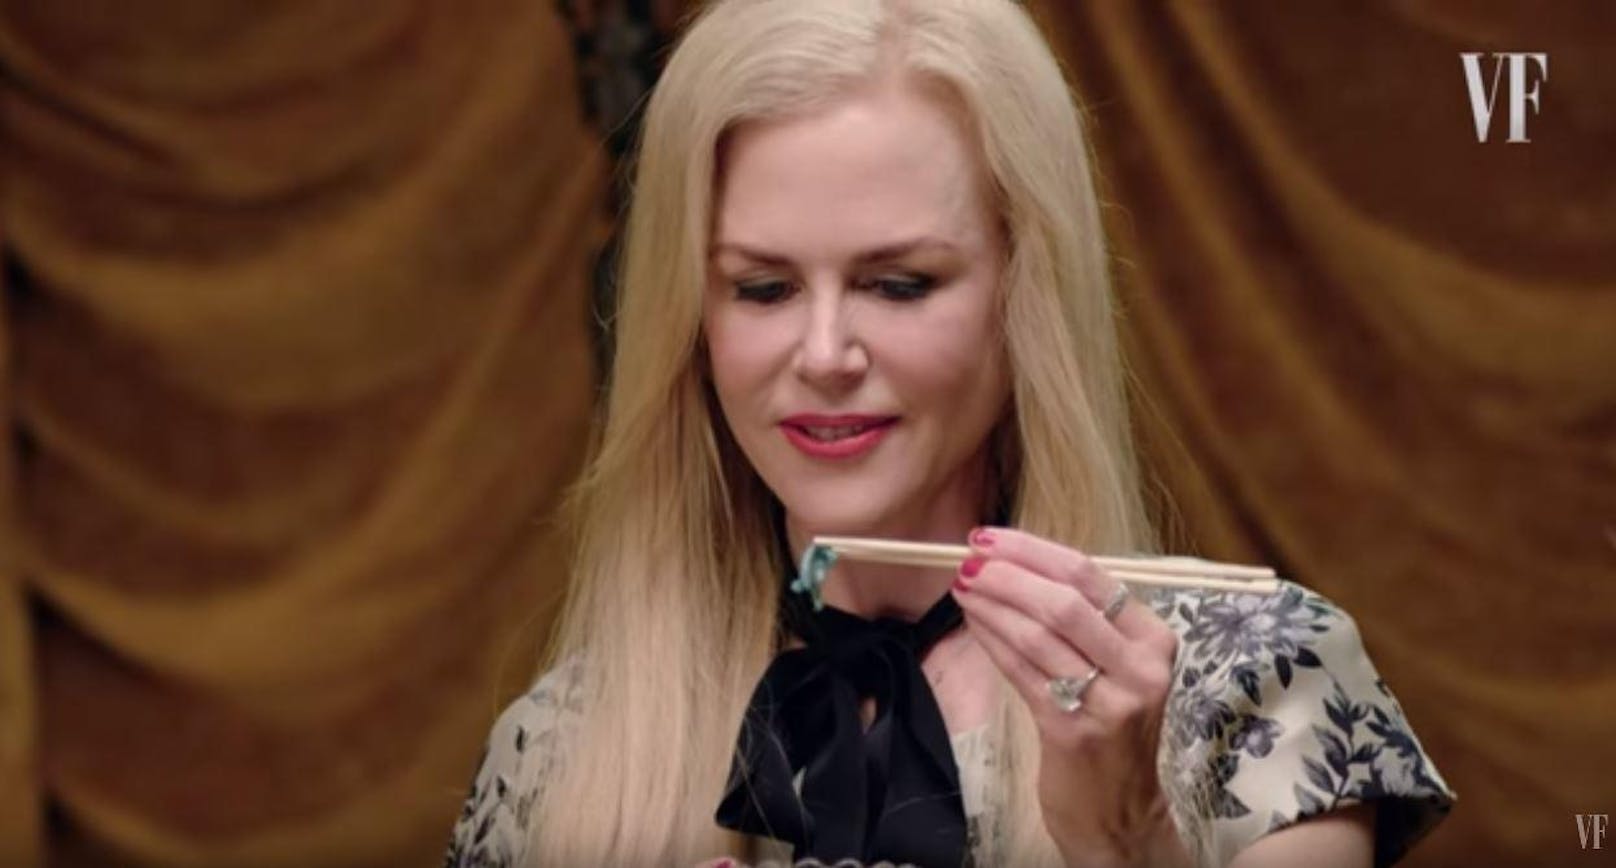 Nicole Kidman ist für ihre Liebe zu Botox bekannt geworden. In den letzten Jahren soll sie es ein wenig reduziert haben.